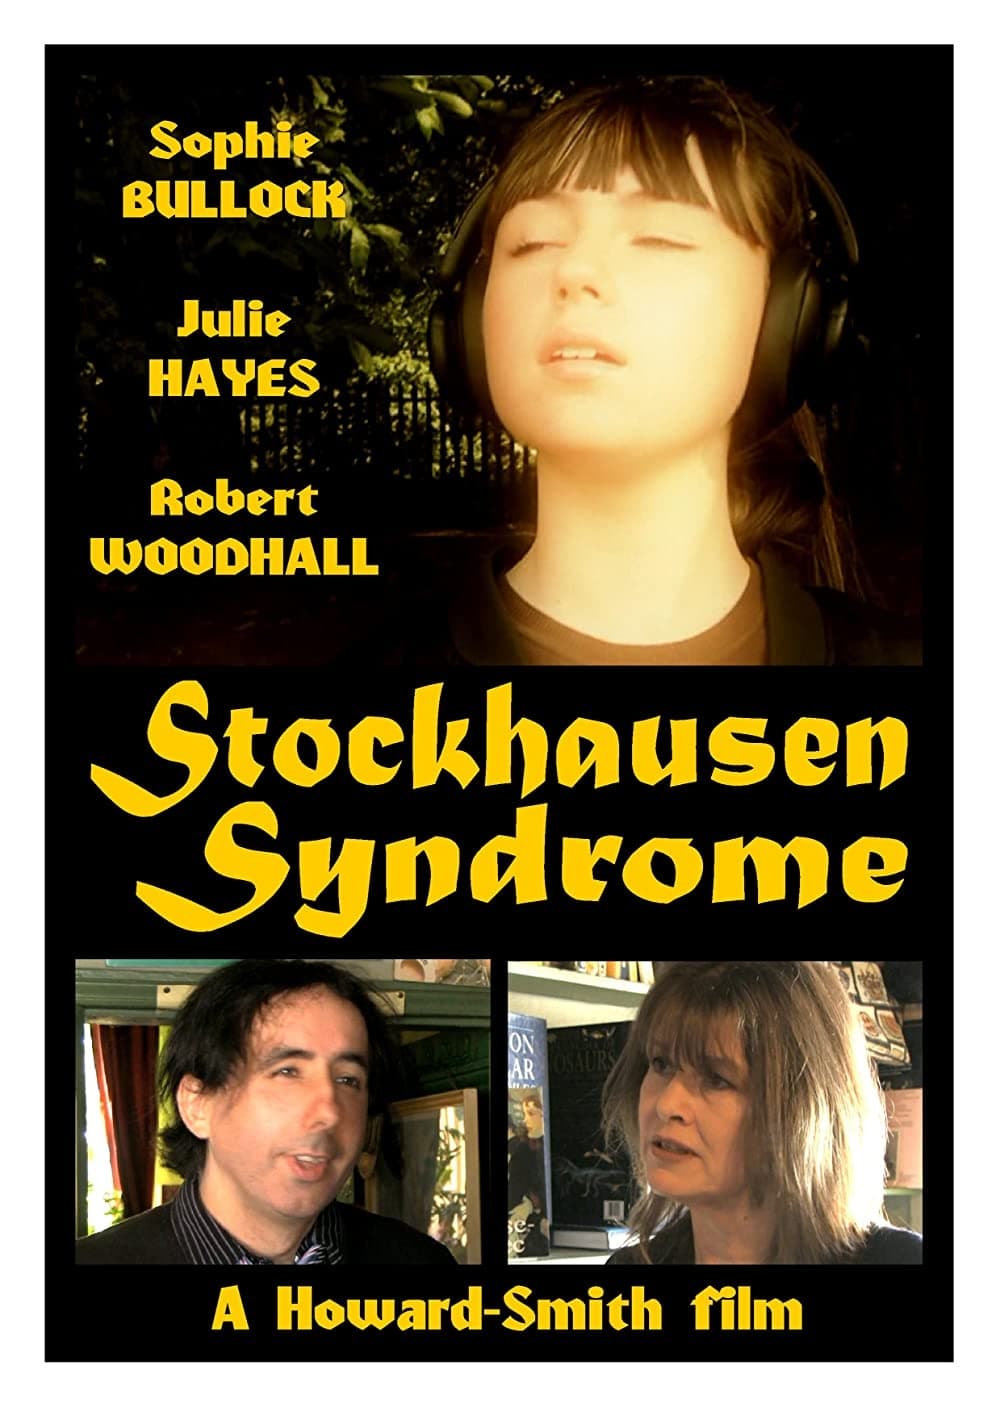 Stockhausen Syndrome